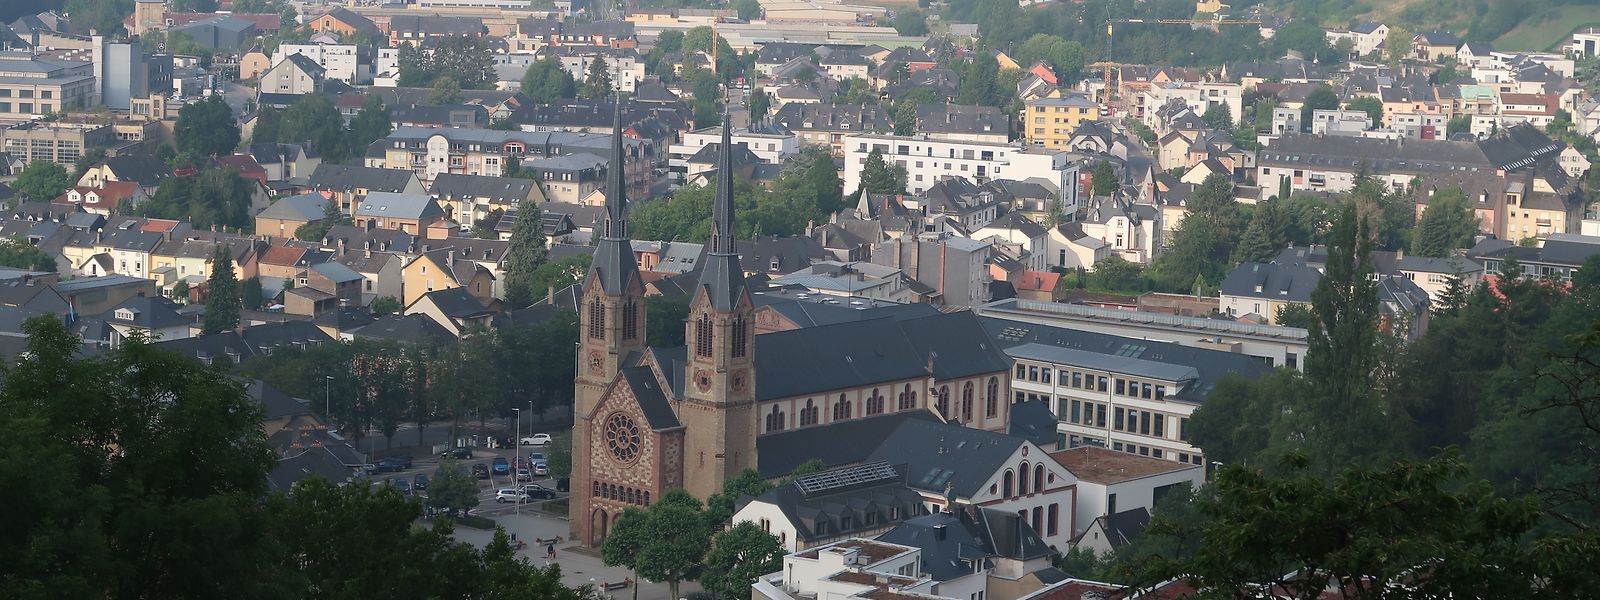 Blick auf einen Teil der wirtschaftlichen Herzkammer des Öslings: Die Nordstad umfasst die Gemeinden Bettendorf, Diekirch, Erpeldingen/Sauer,
Ettelbrück und Schieren. Mitte kommenden Jahres sollen die Bewohner über eine Fusion der fünf Kommunen entscheiden.